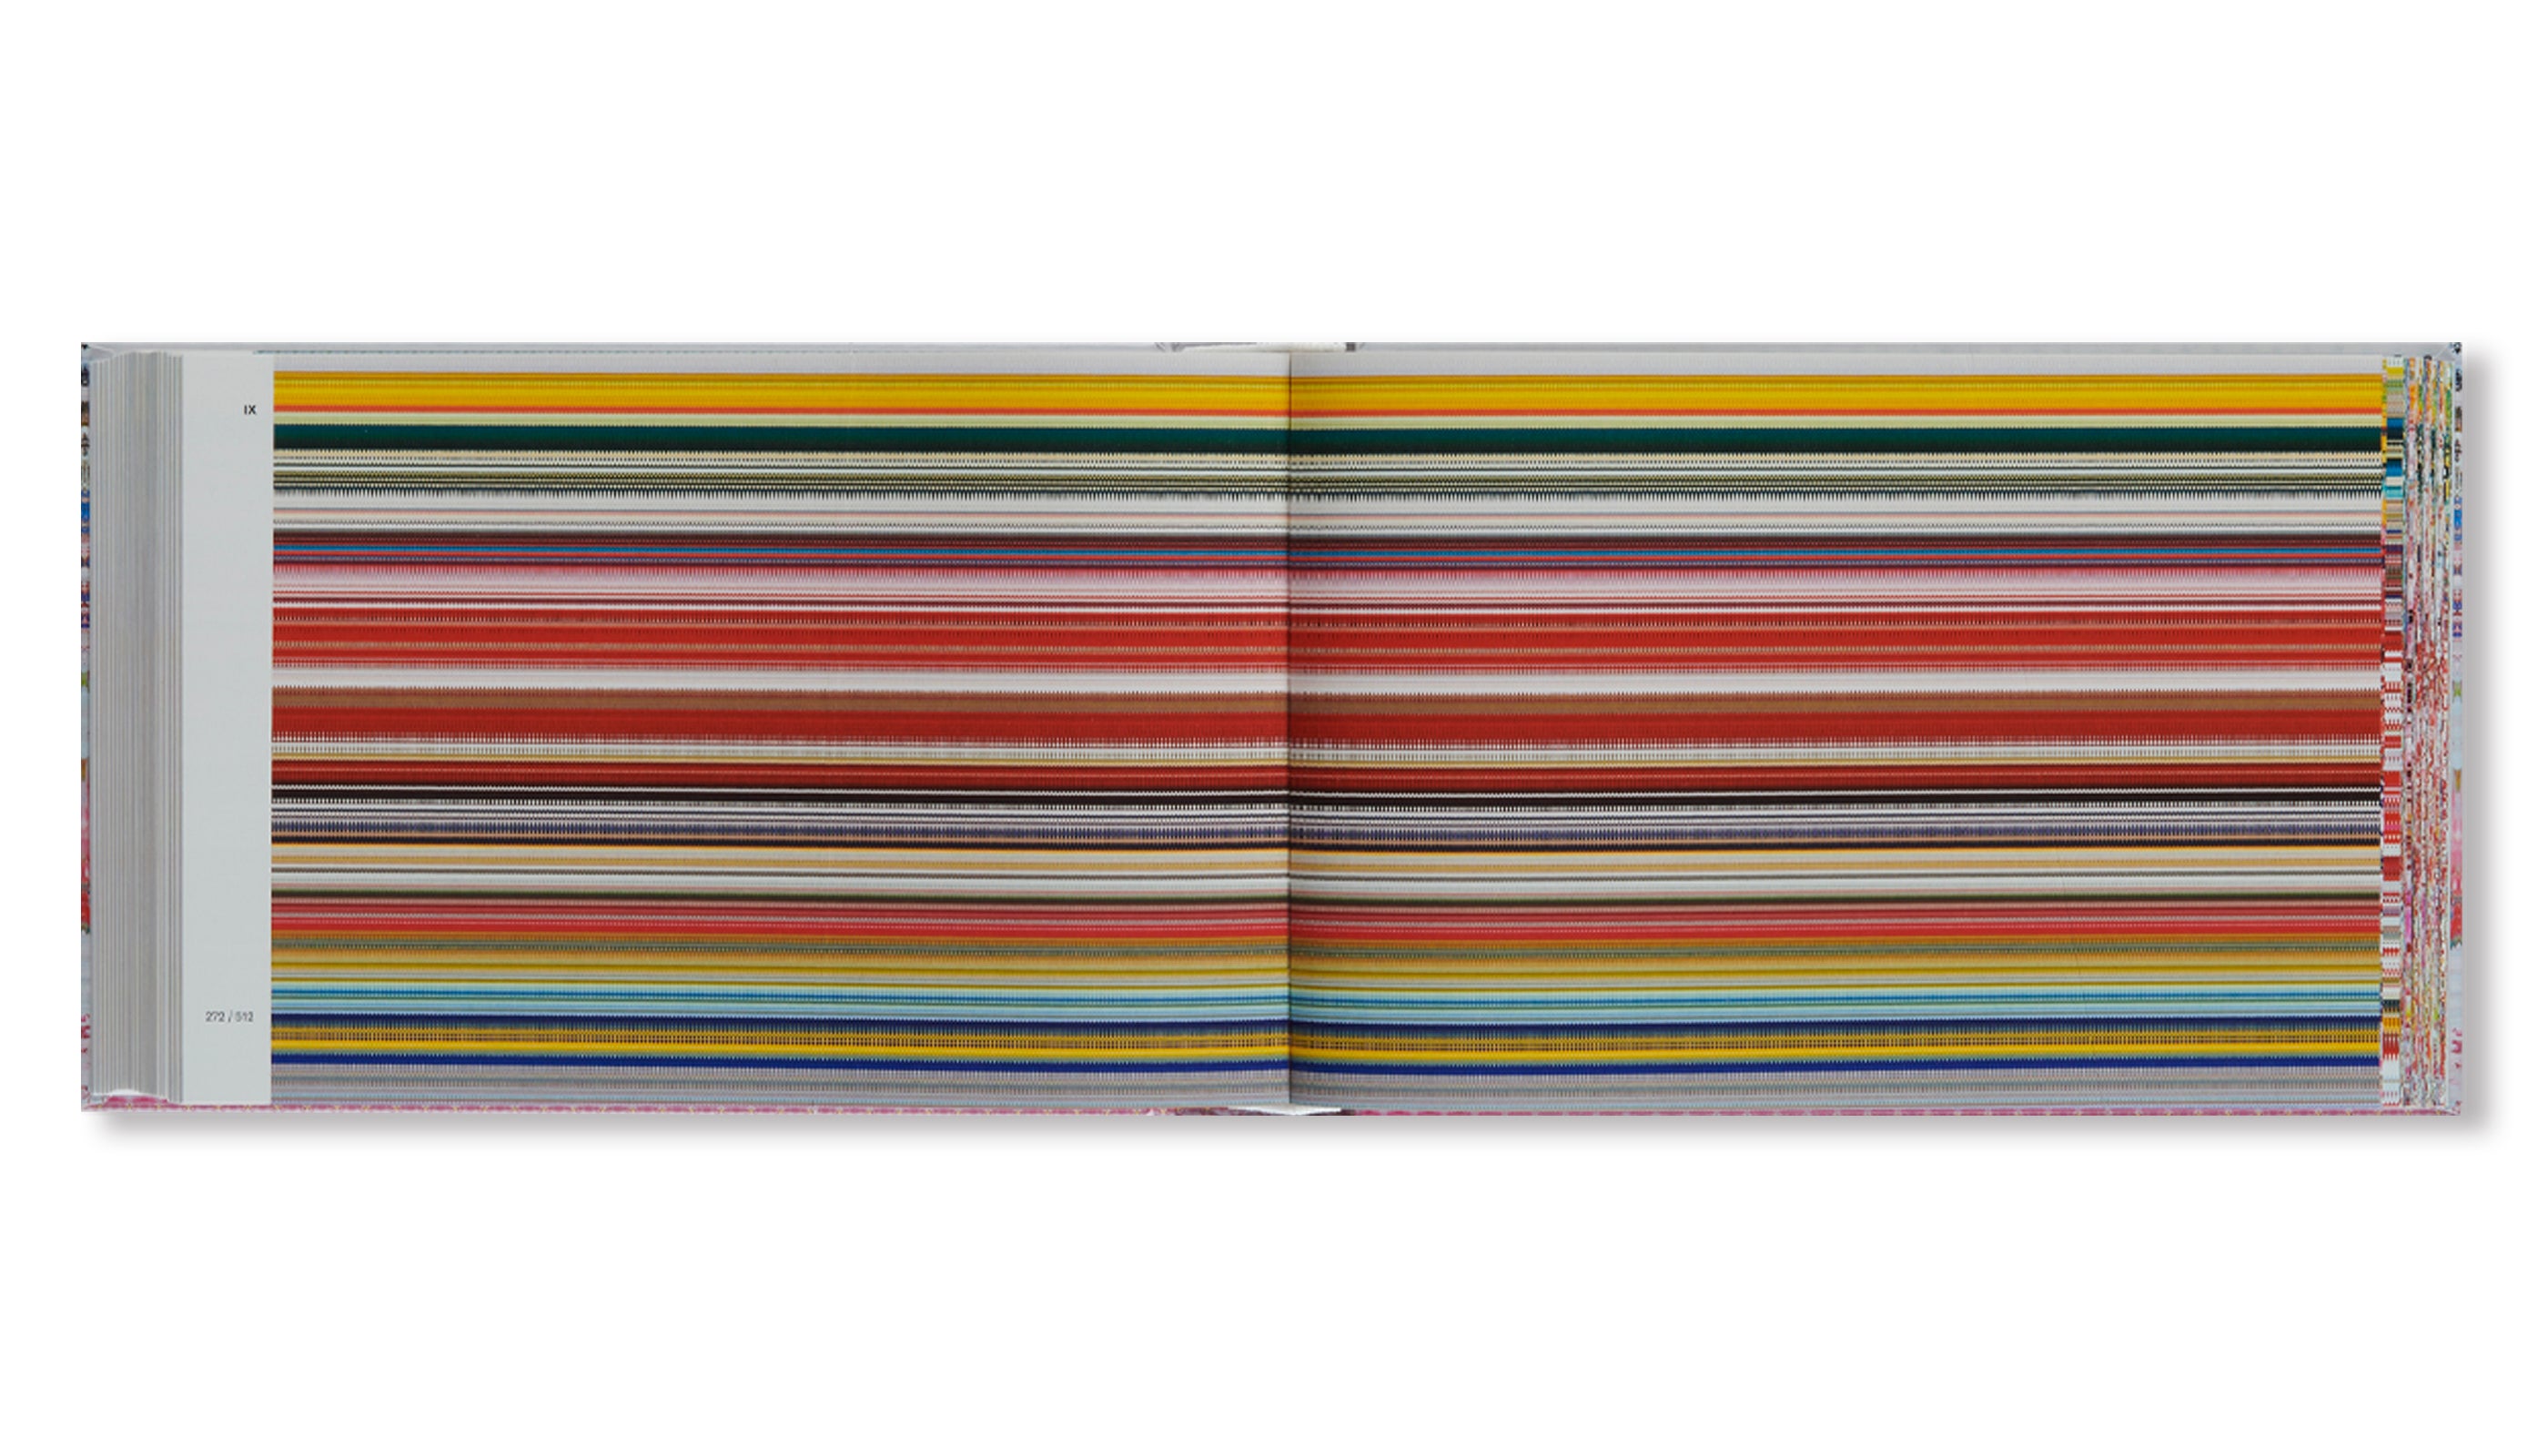 MOTIFS by Gerhard Richter